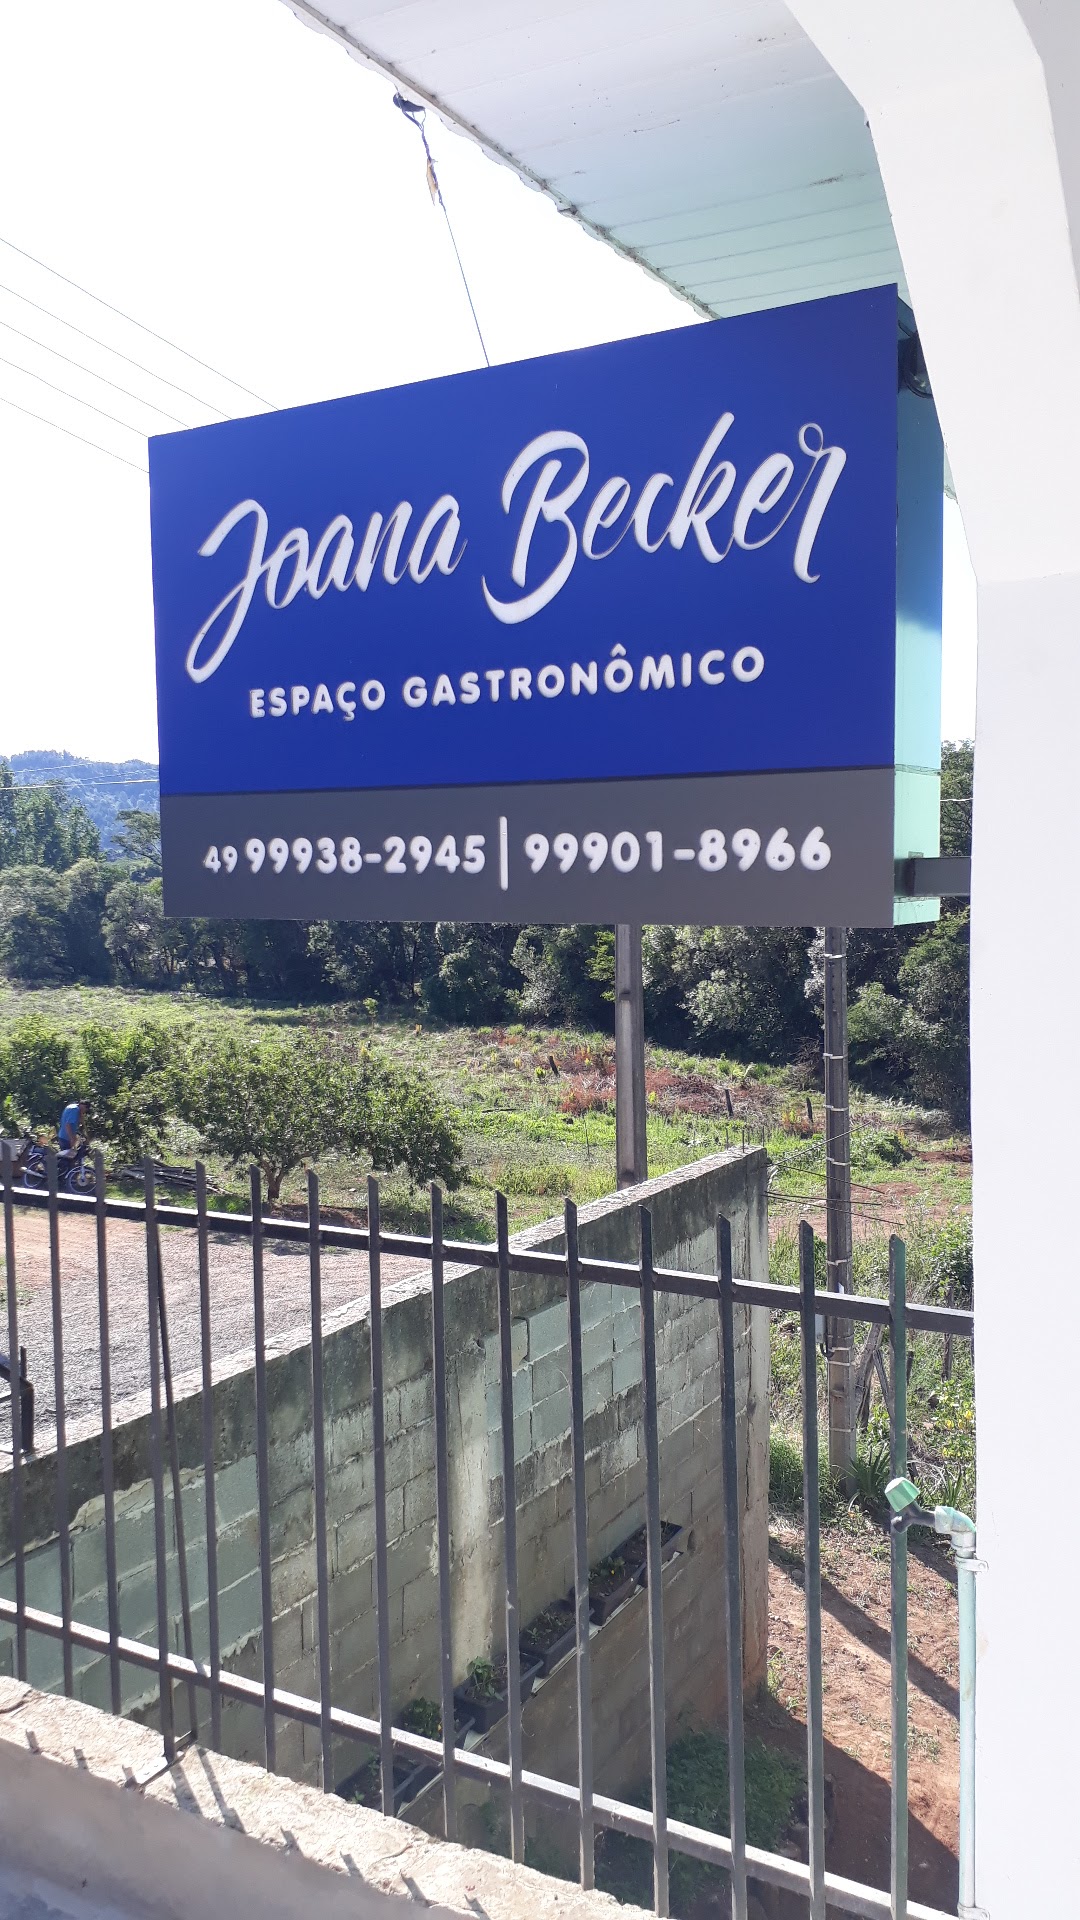 Joana Becker Espaço Gastronômico